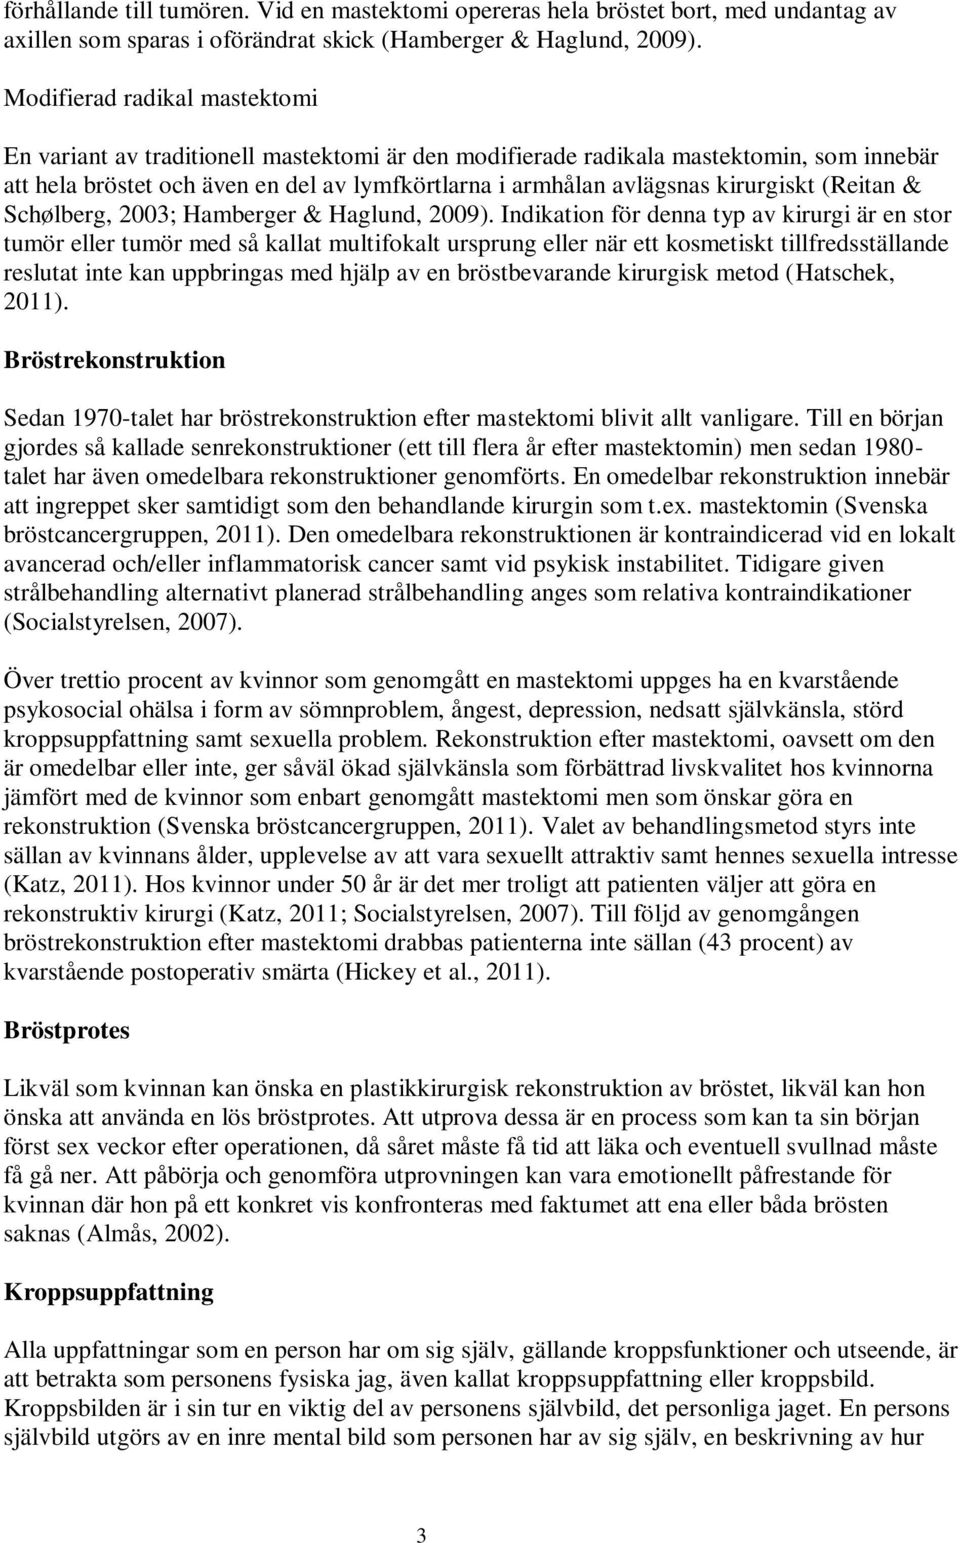 kirurgiskt (Reitan & Schølberg, 2003; Hamberger & Haglund, 2009).